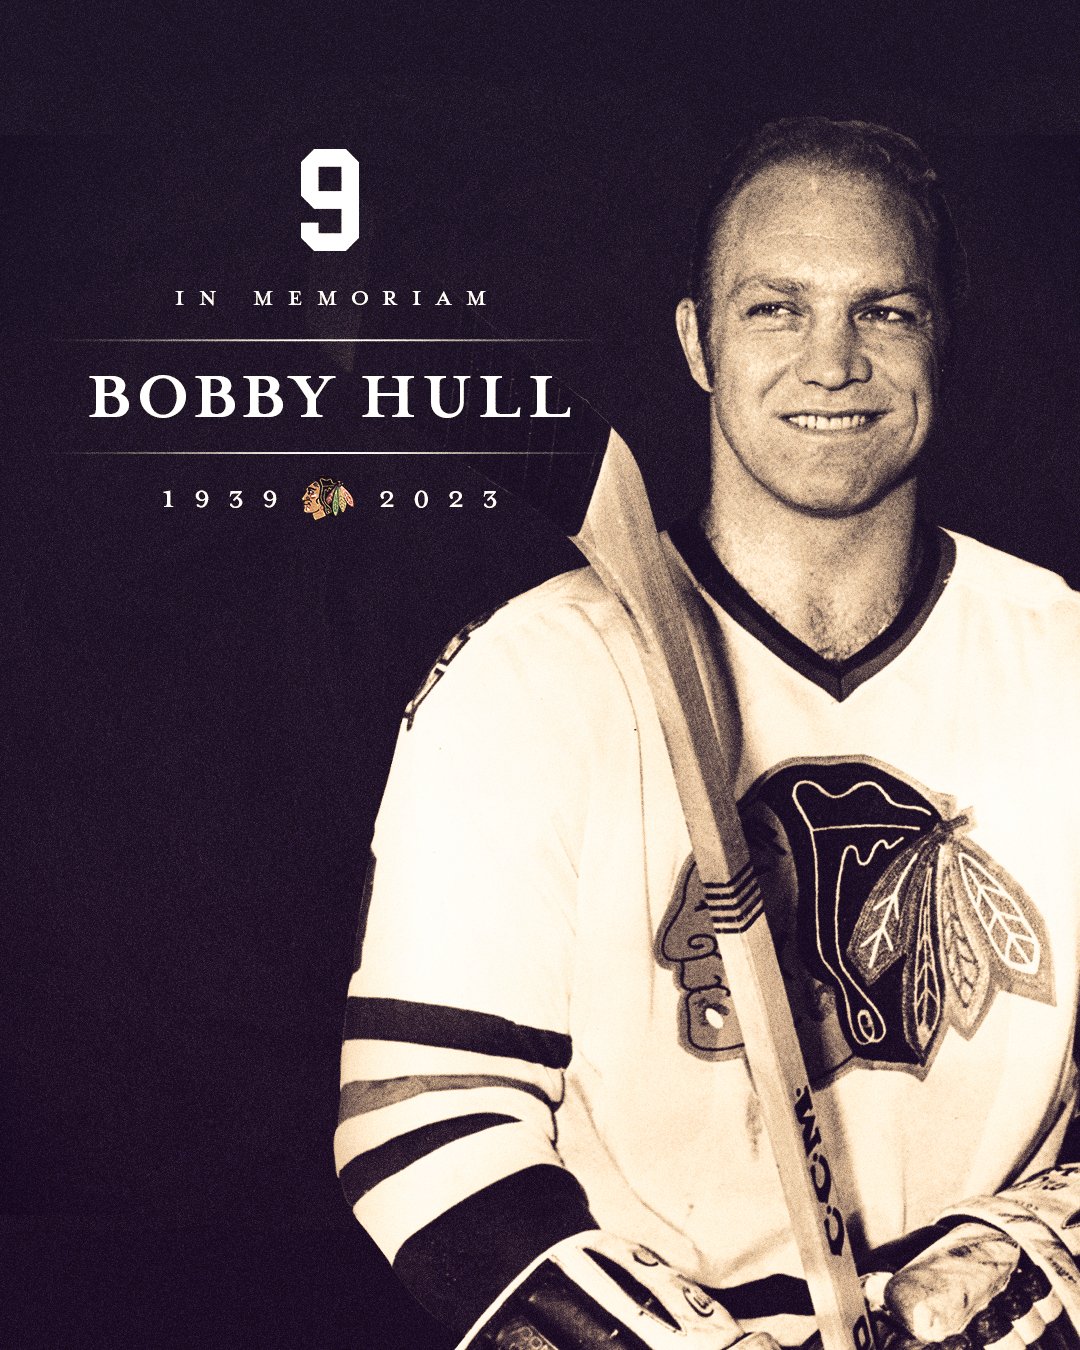 Chicago Blackhawks Legends: Bobby Hull - The Golden Jet